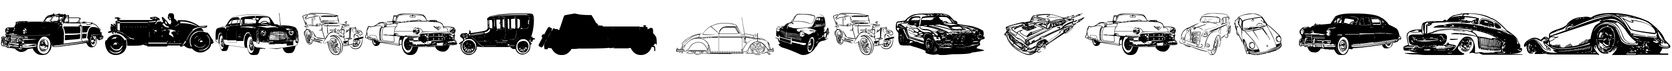 Vintage Auto Cars TFB